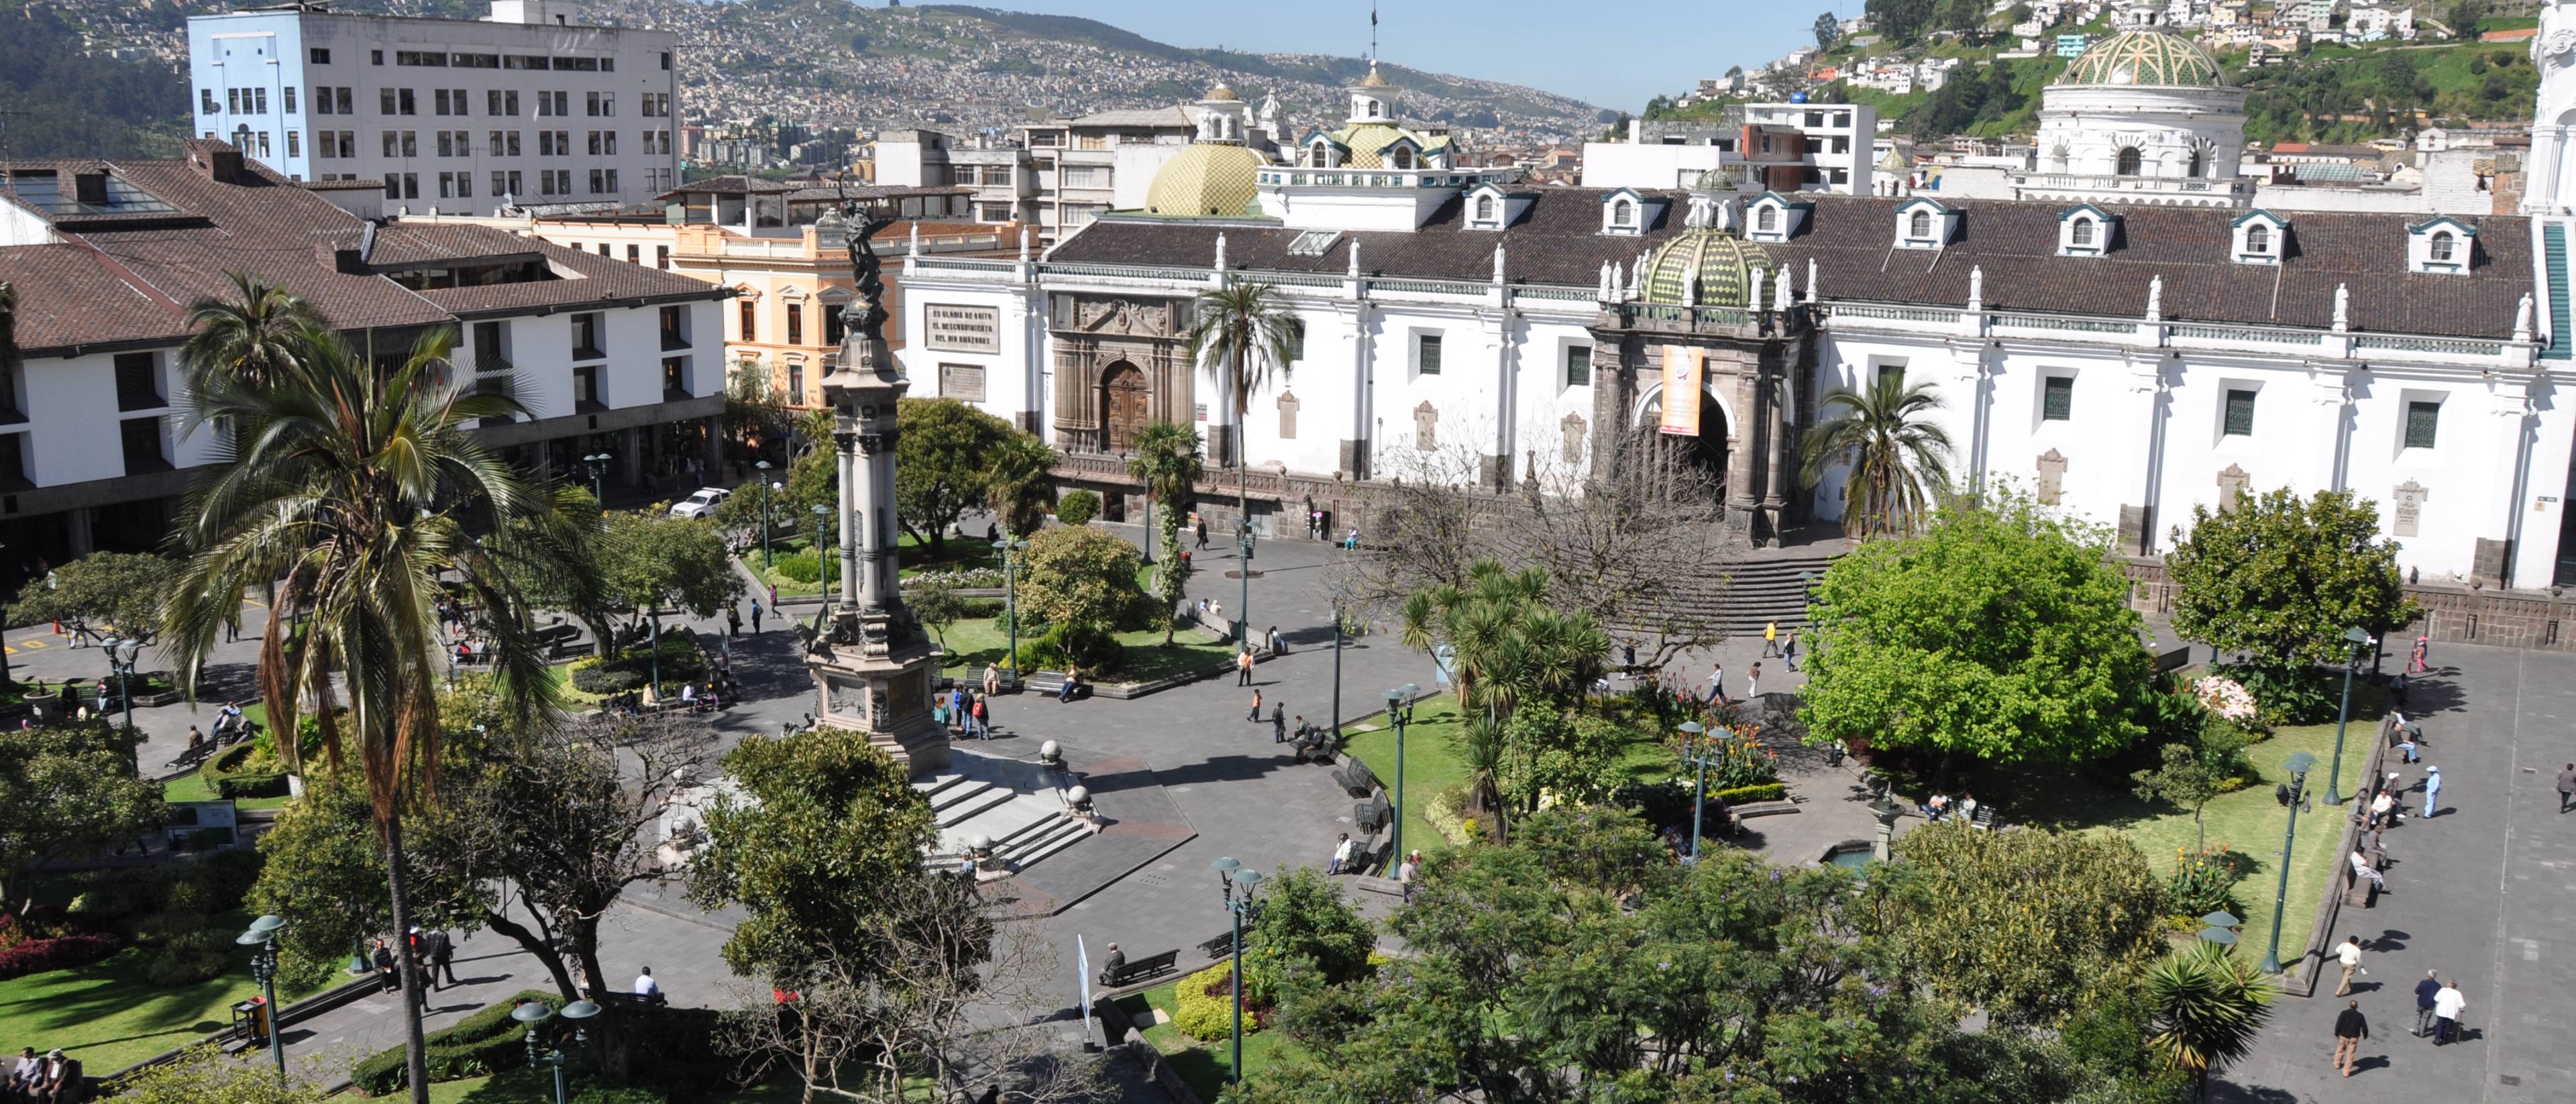 Ankunft in Quito, der Hauptstadt in der Mitte der Welt